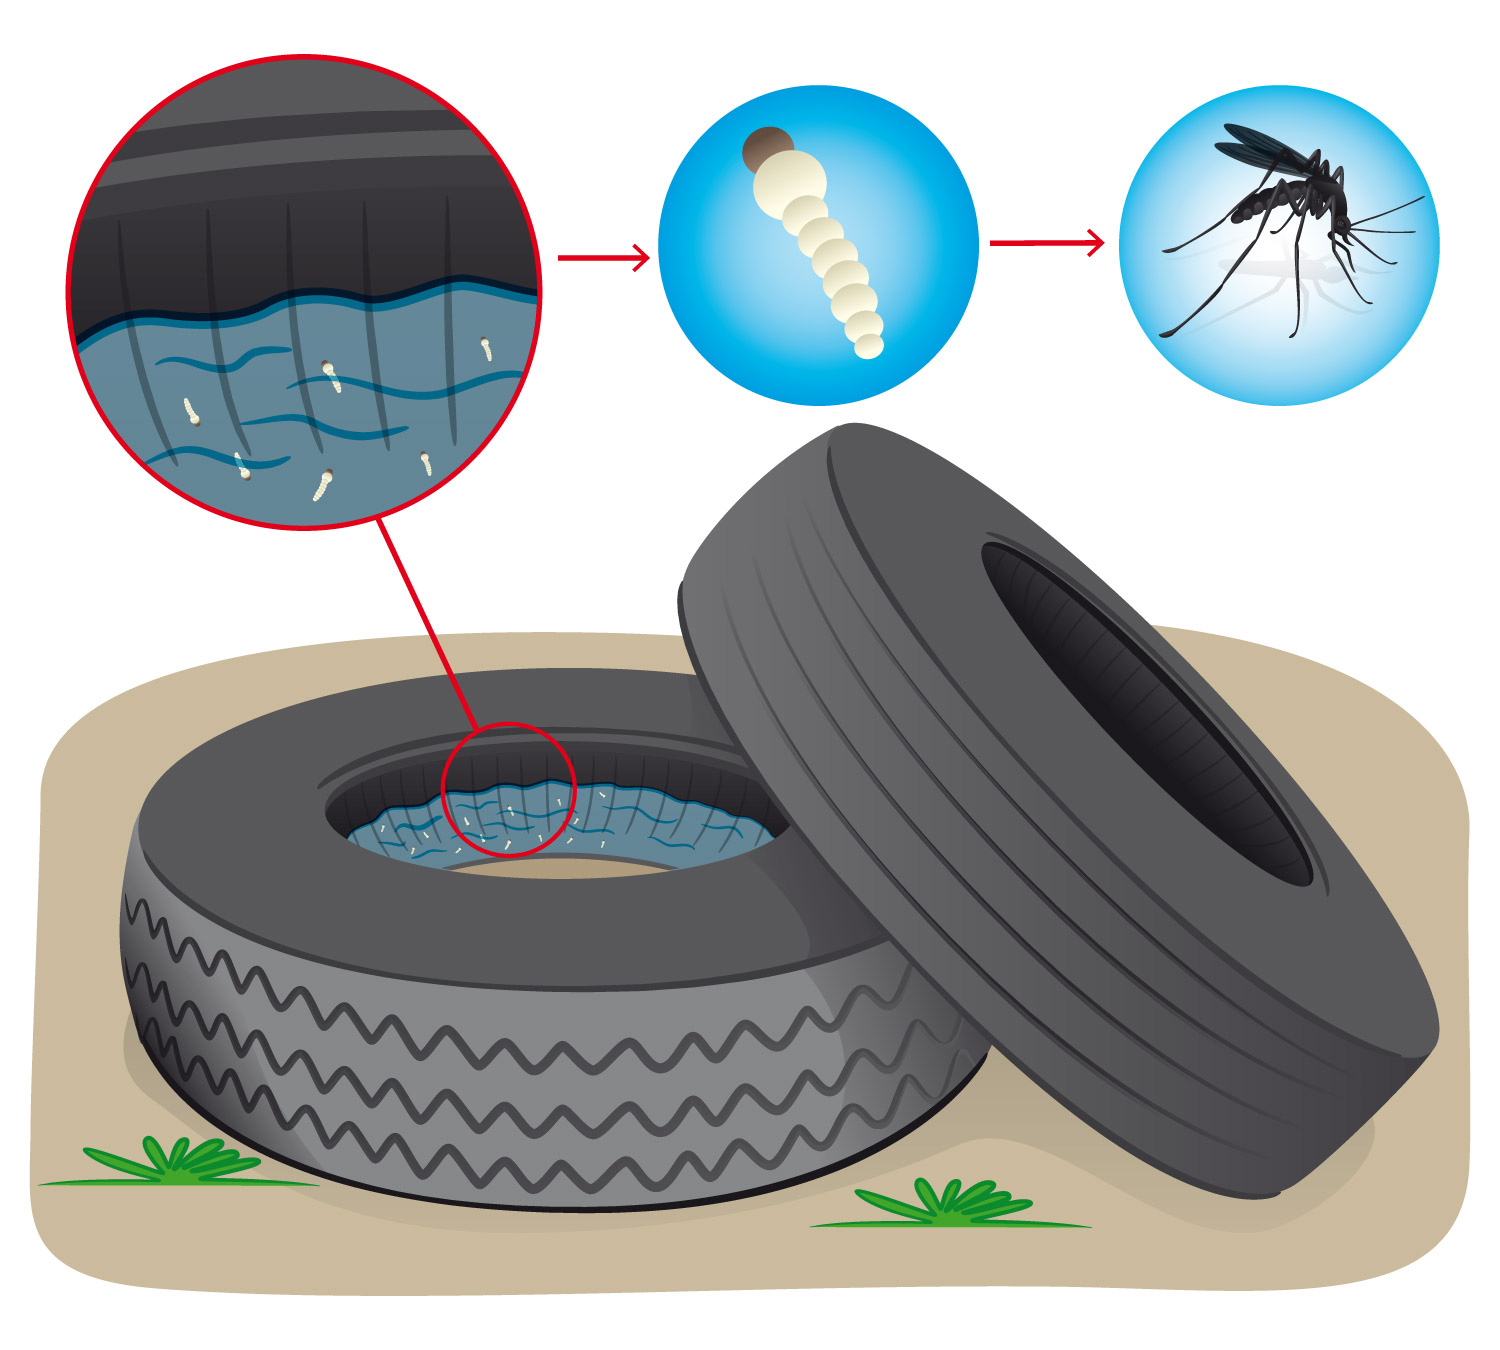 Los mosquitos se reproducen con frecuencia en el interior de las cubiertas de los neumticos abandonados a la intemperie...